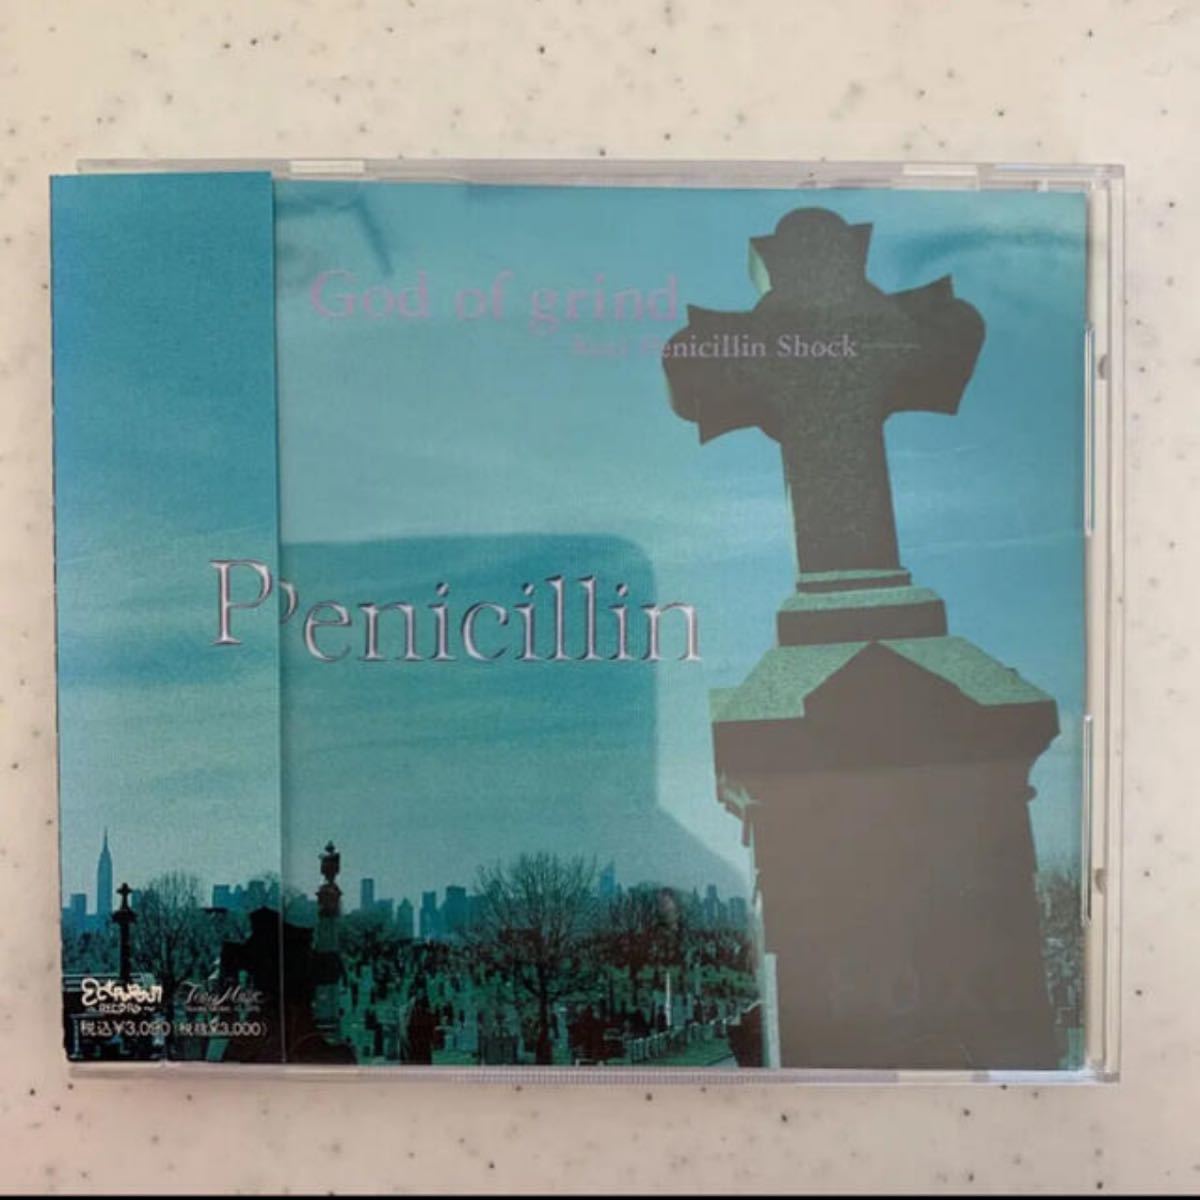 penicillin CD